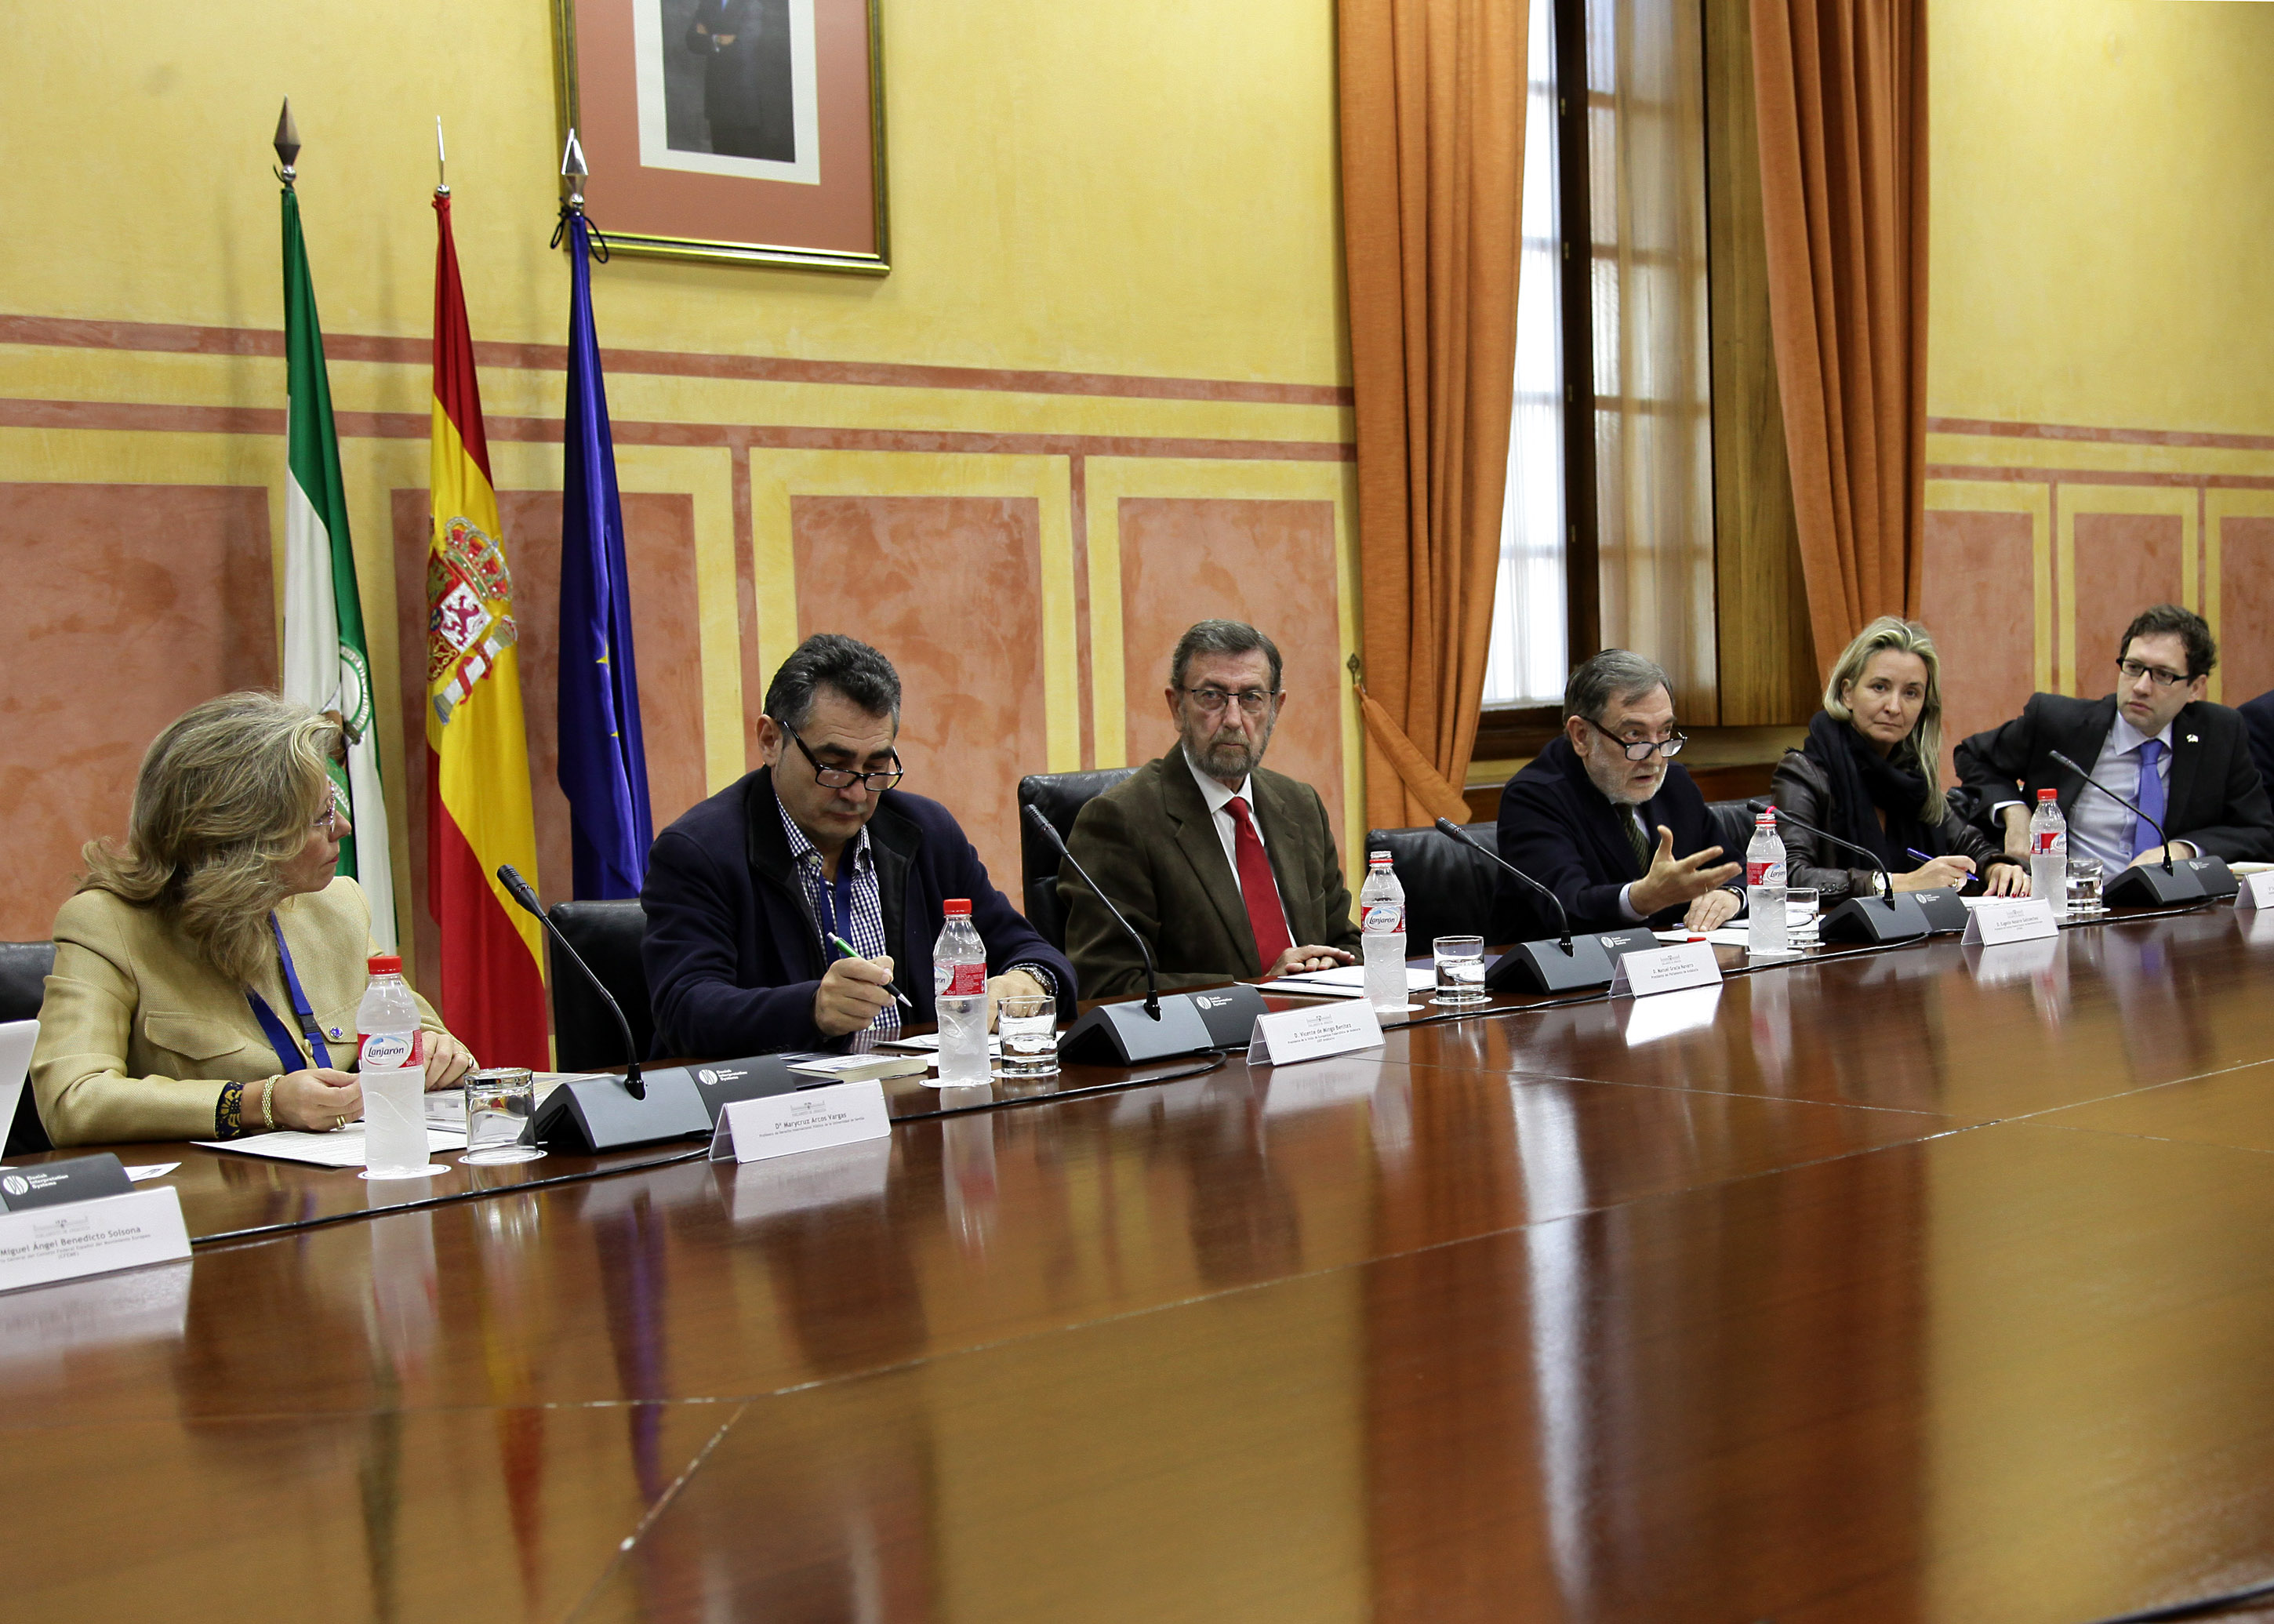 La diputada Carolina Gonzlez Vigo y el presidente del Parlamento participan en el seminario